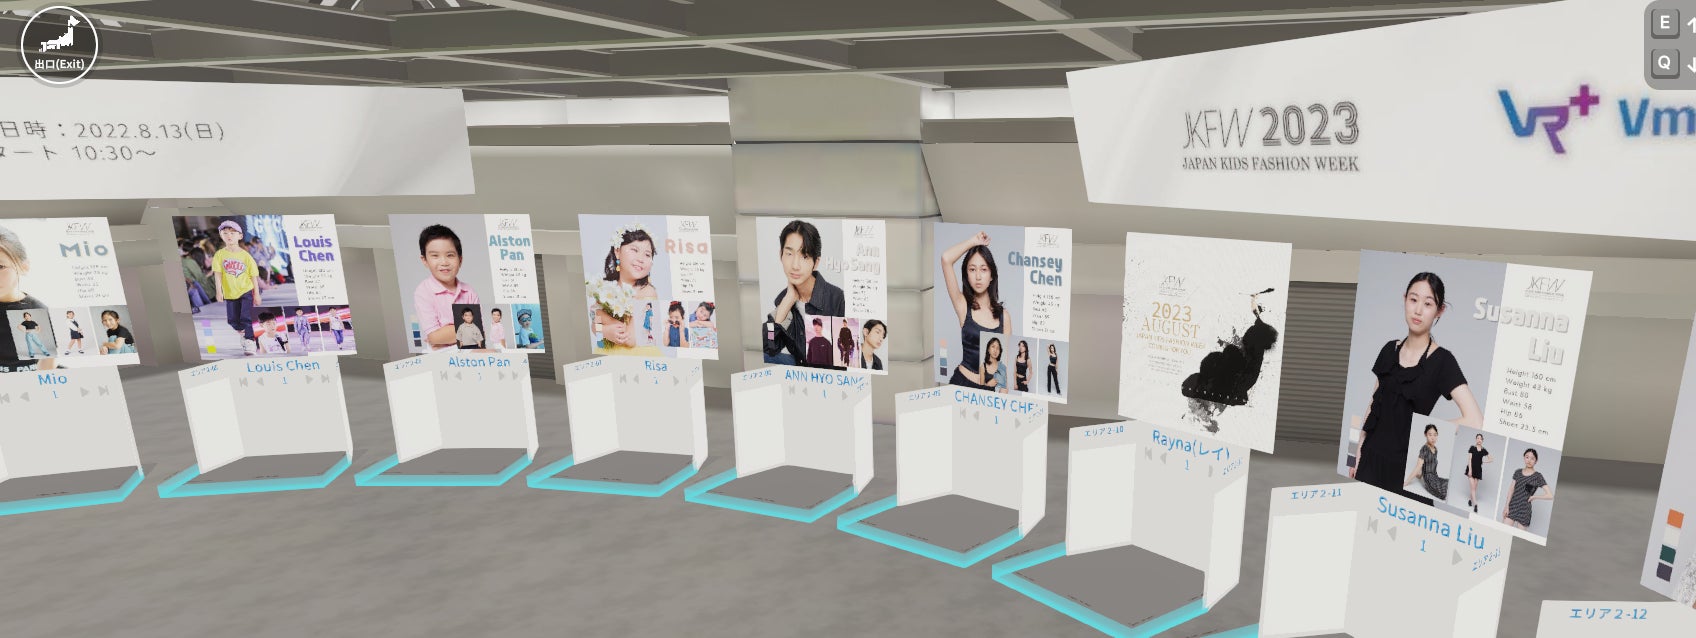 キッズモデルのワールドカップ「Japan Kids Fashion Week 2023」をメタバースでライブ配信のサブ画像2